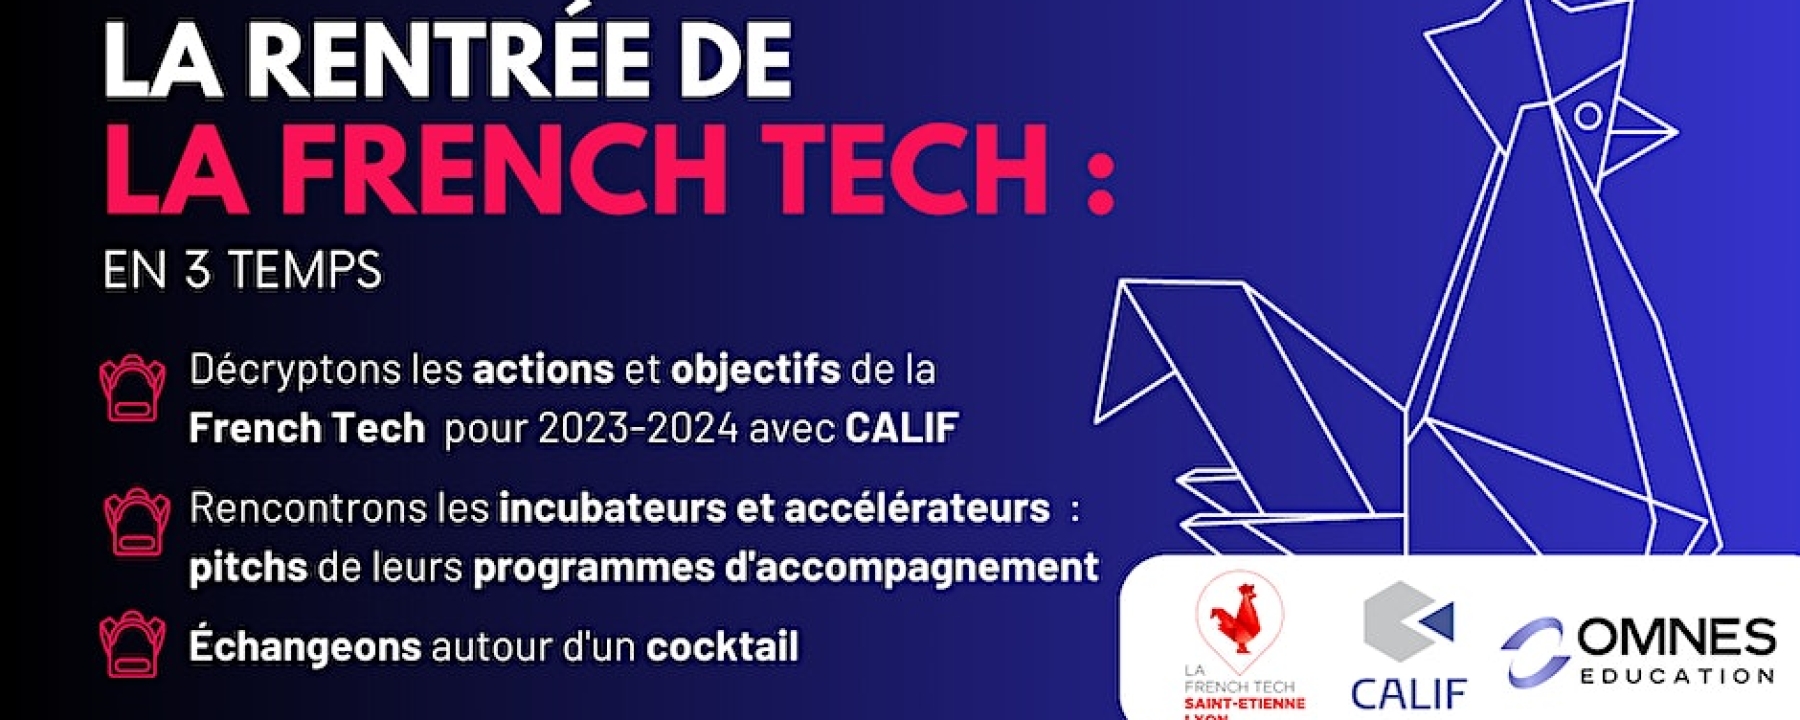 La Rentrée de la French Tech